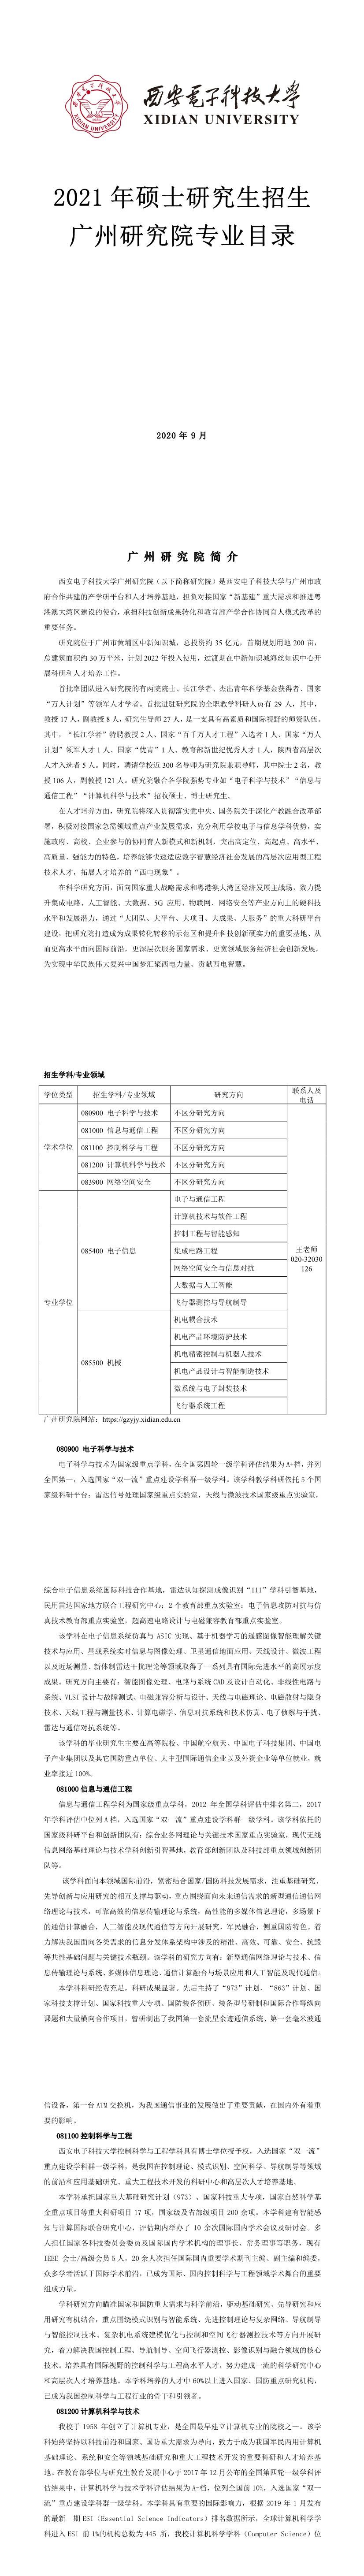 西安电子科技大学018广州研究院2021年硕士研究生招生专业目录